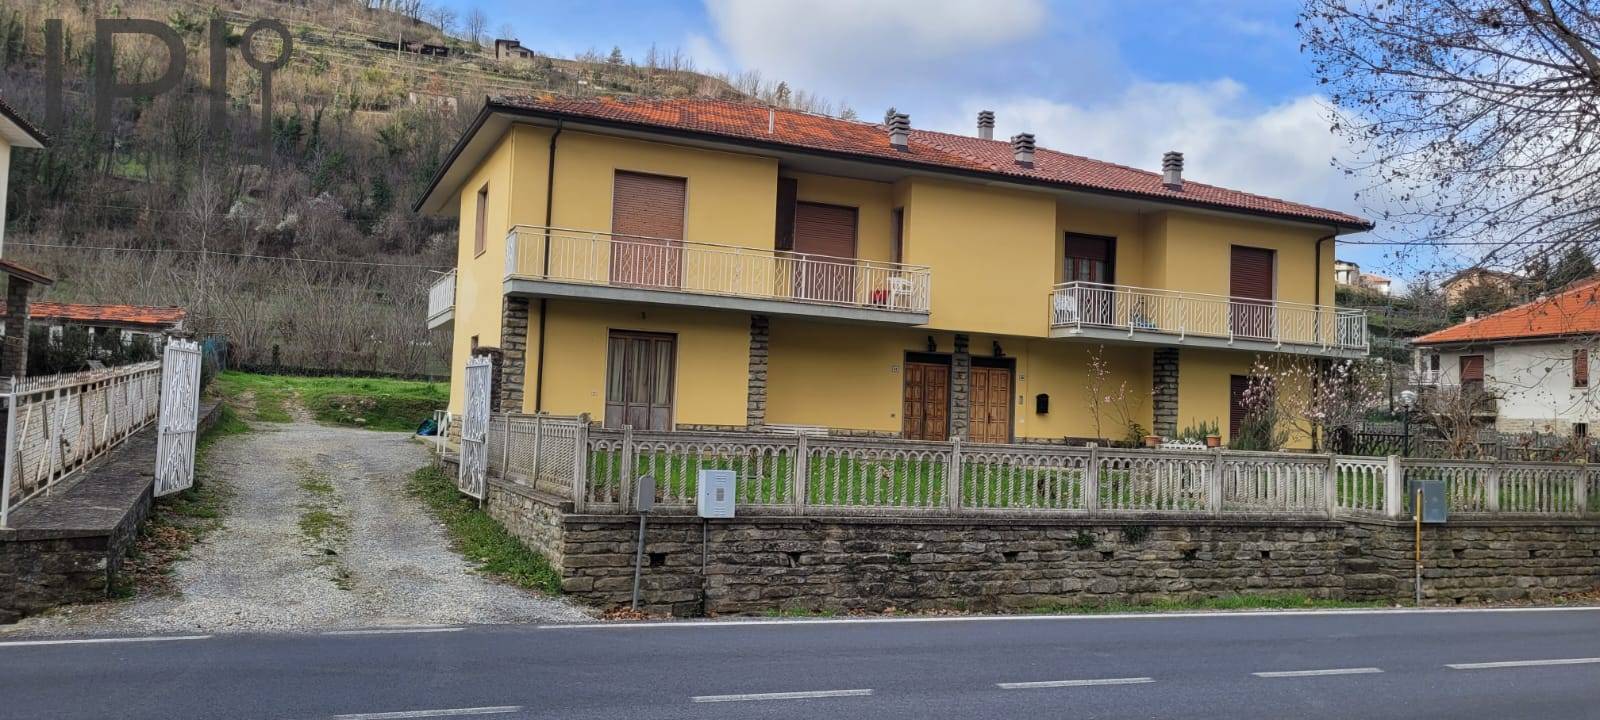 Villa a Schiera in vendita a Cortemilia, 6 locali, prezzo € 110.000 | PortaleAgenzieImmobiliari.it